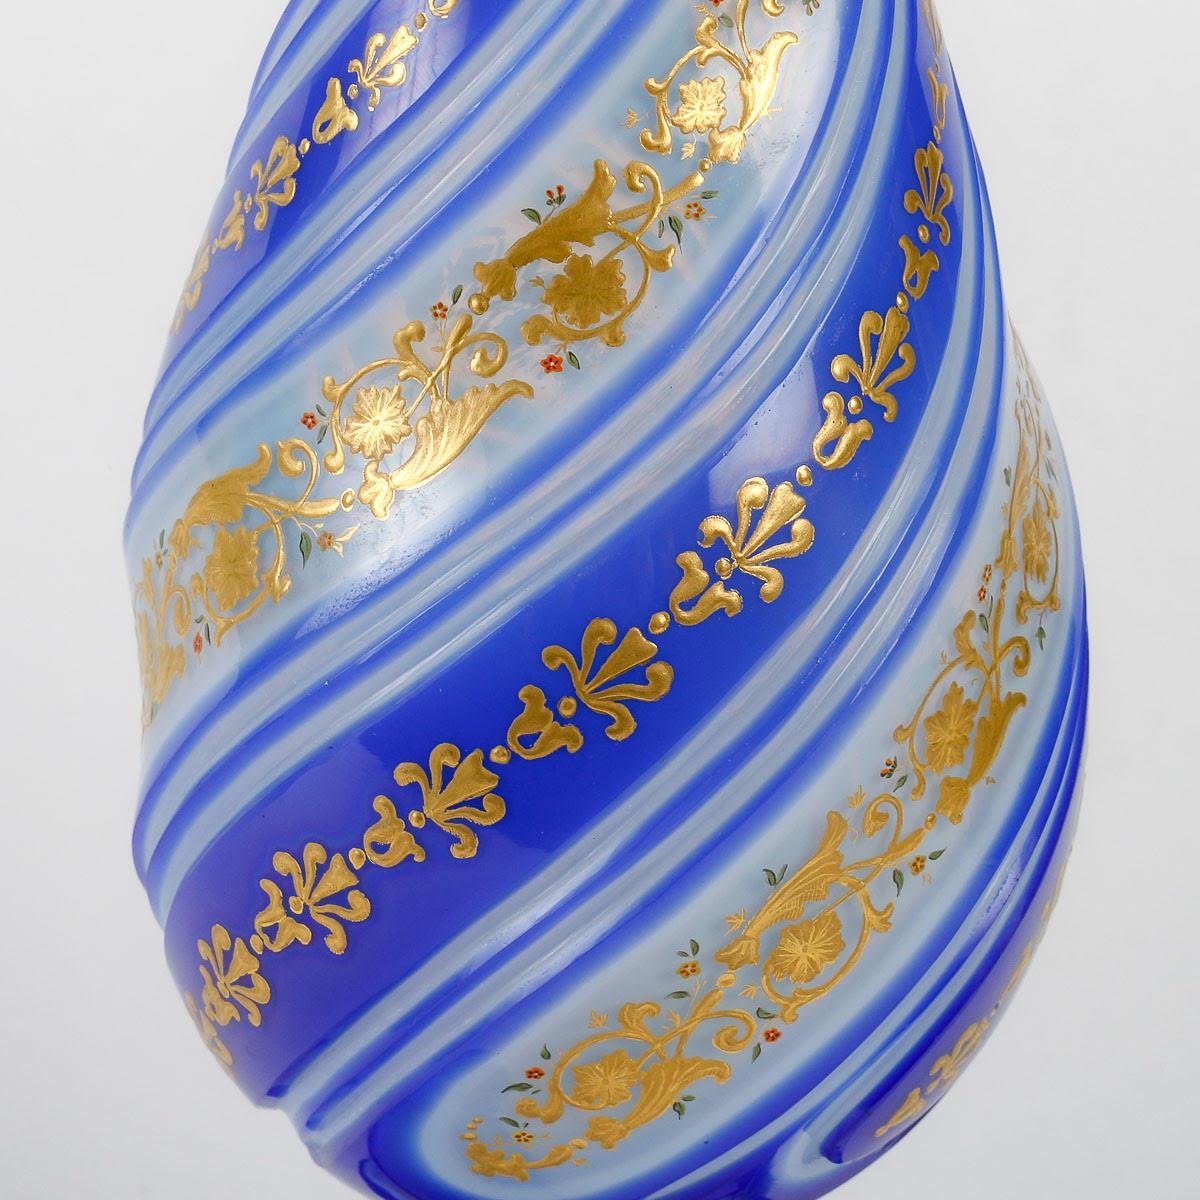 Vase en opaline, émaillé d'or, période Napoléon III.

Vase en opaline émaillée d'or, 19e siècle, période Napoléon III.  
h : 33,5cm , d : 14cm